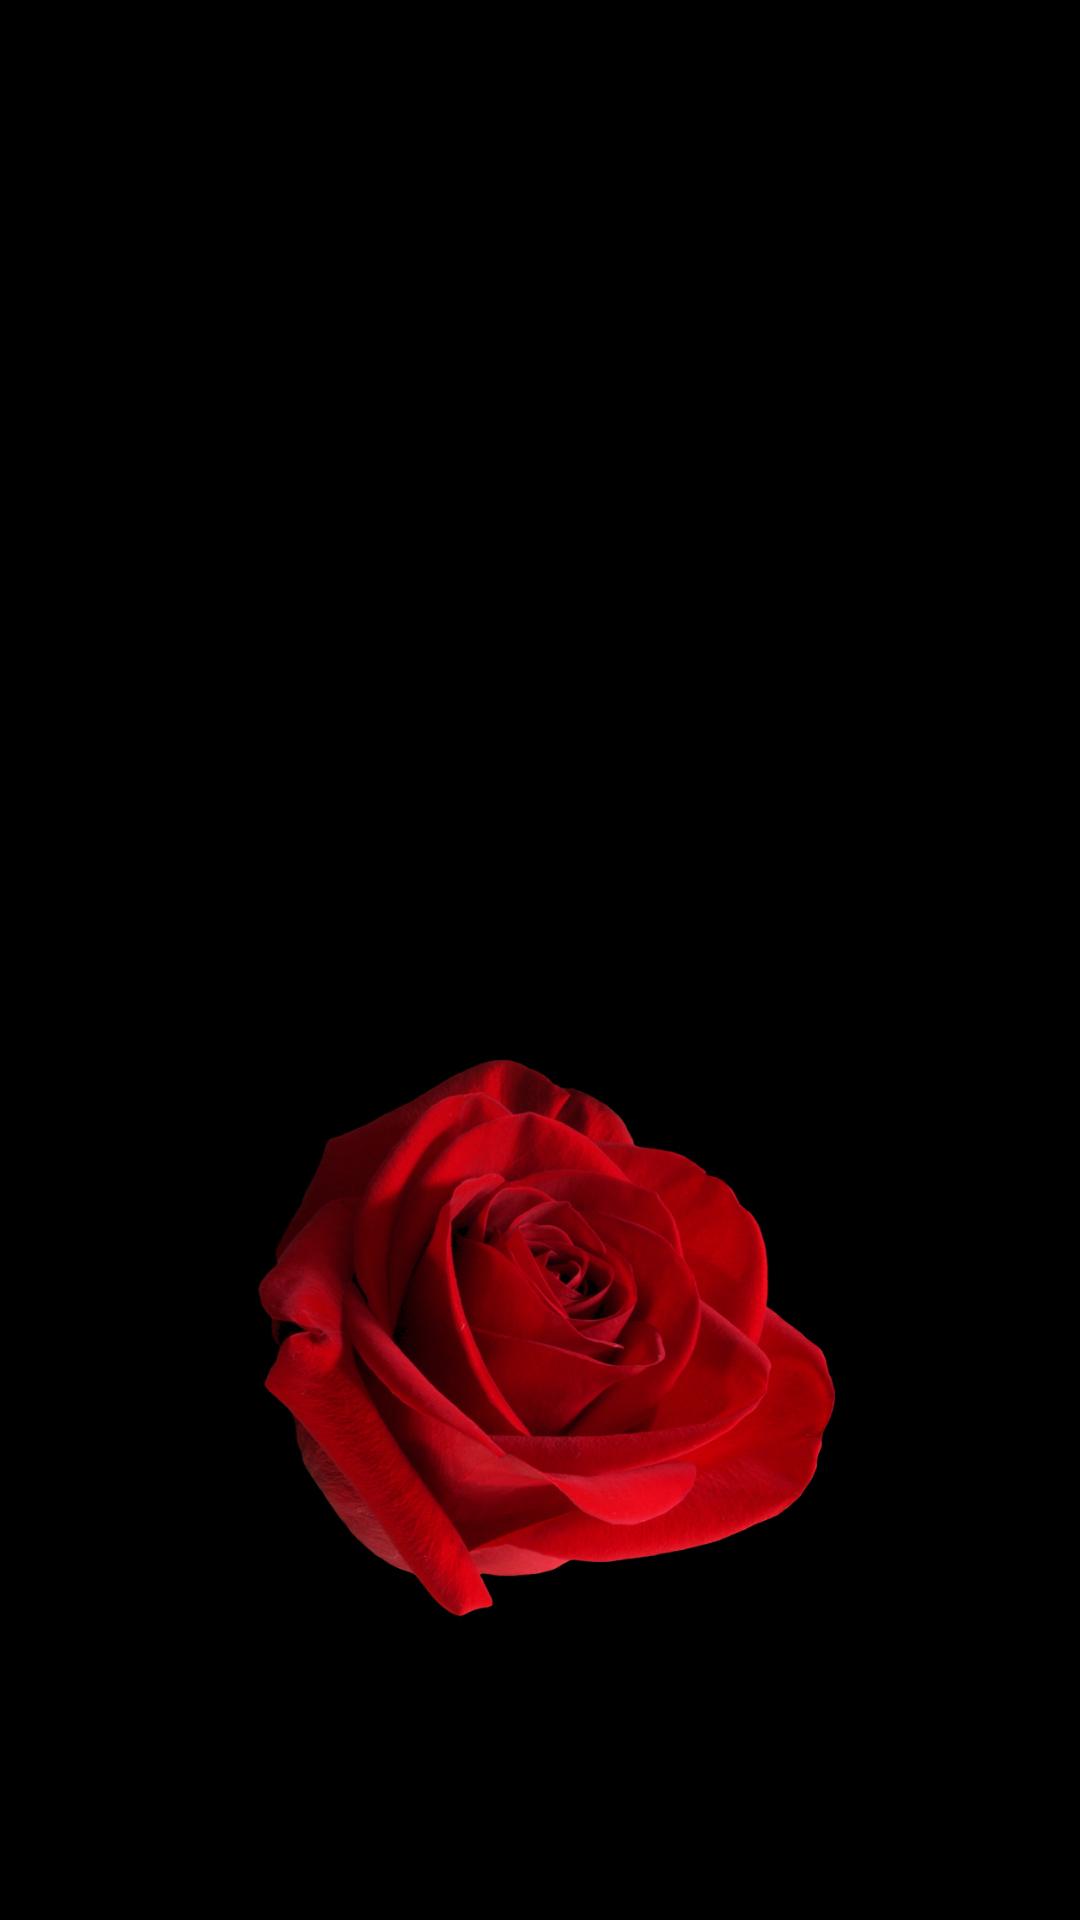 红玫瑰黑色背景1080x19手机壁纸 手机壁纸图片 彼岸图网pic Netbian Com